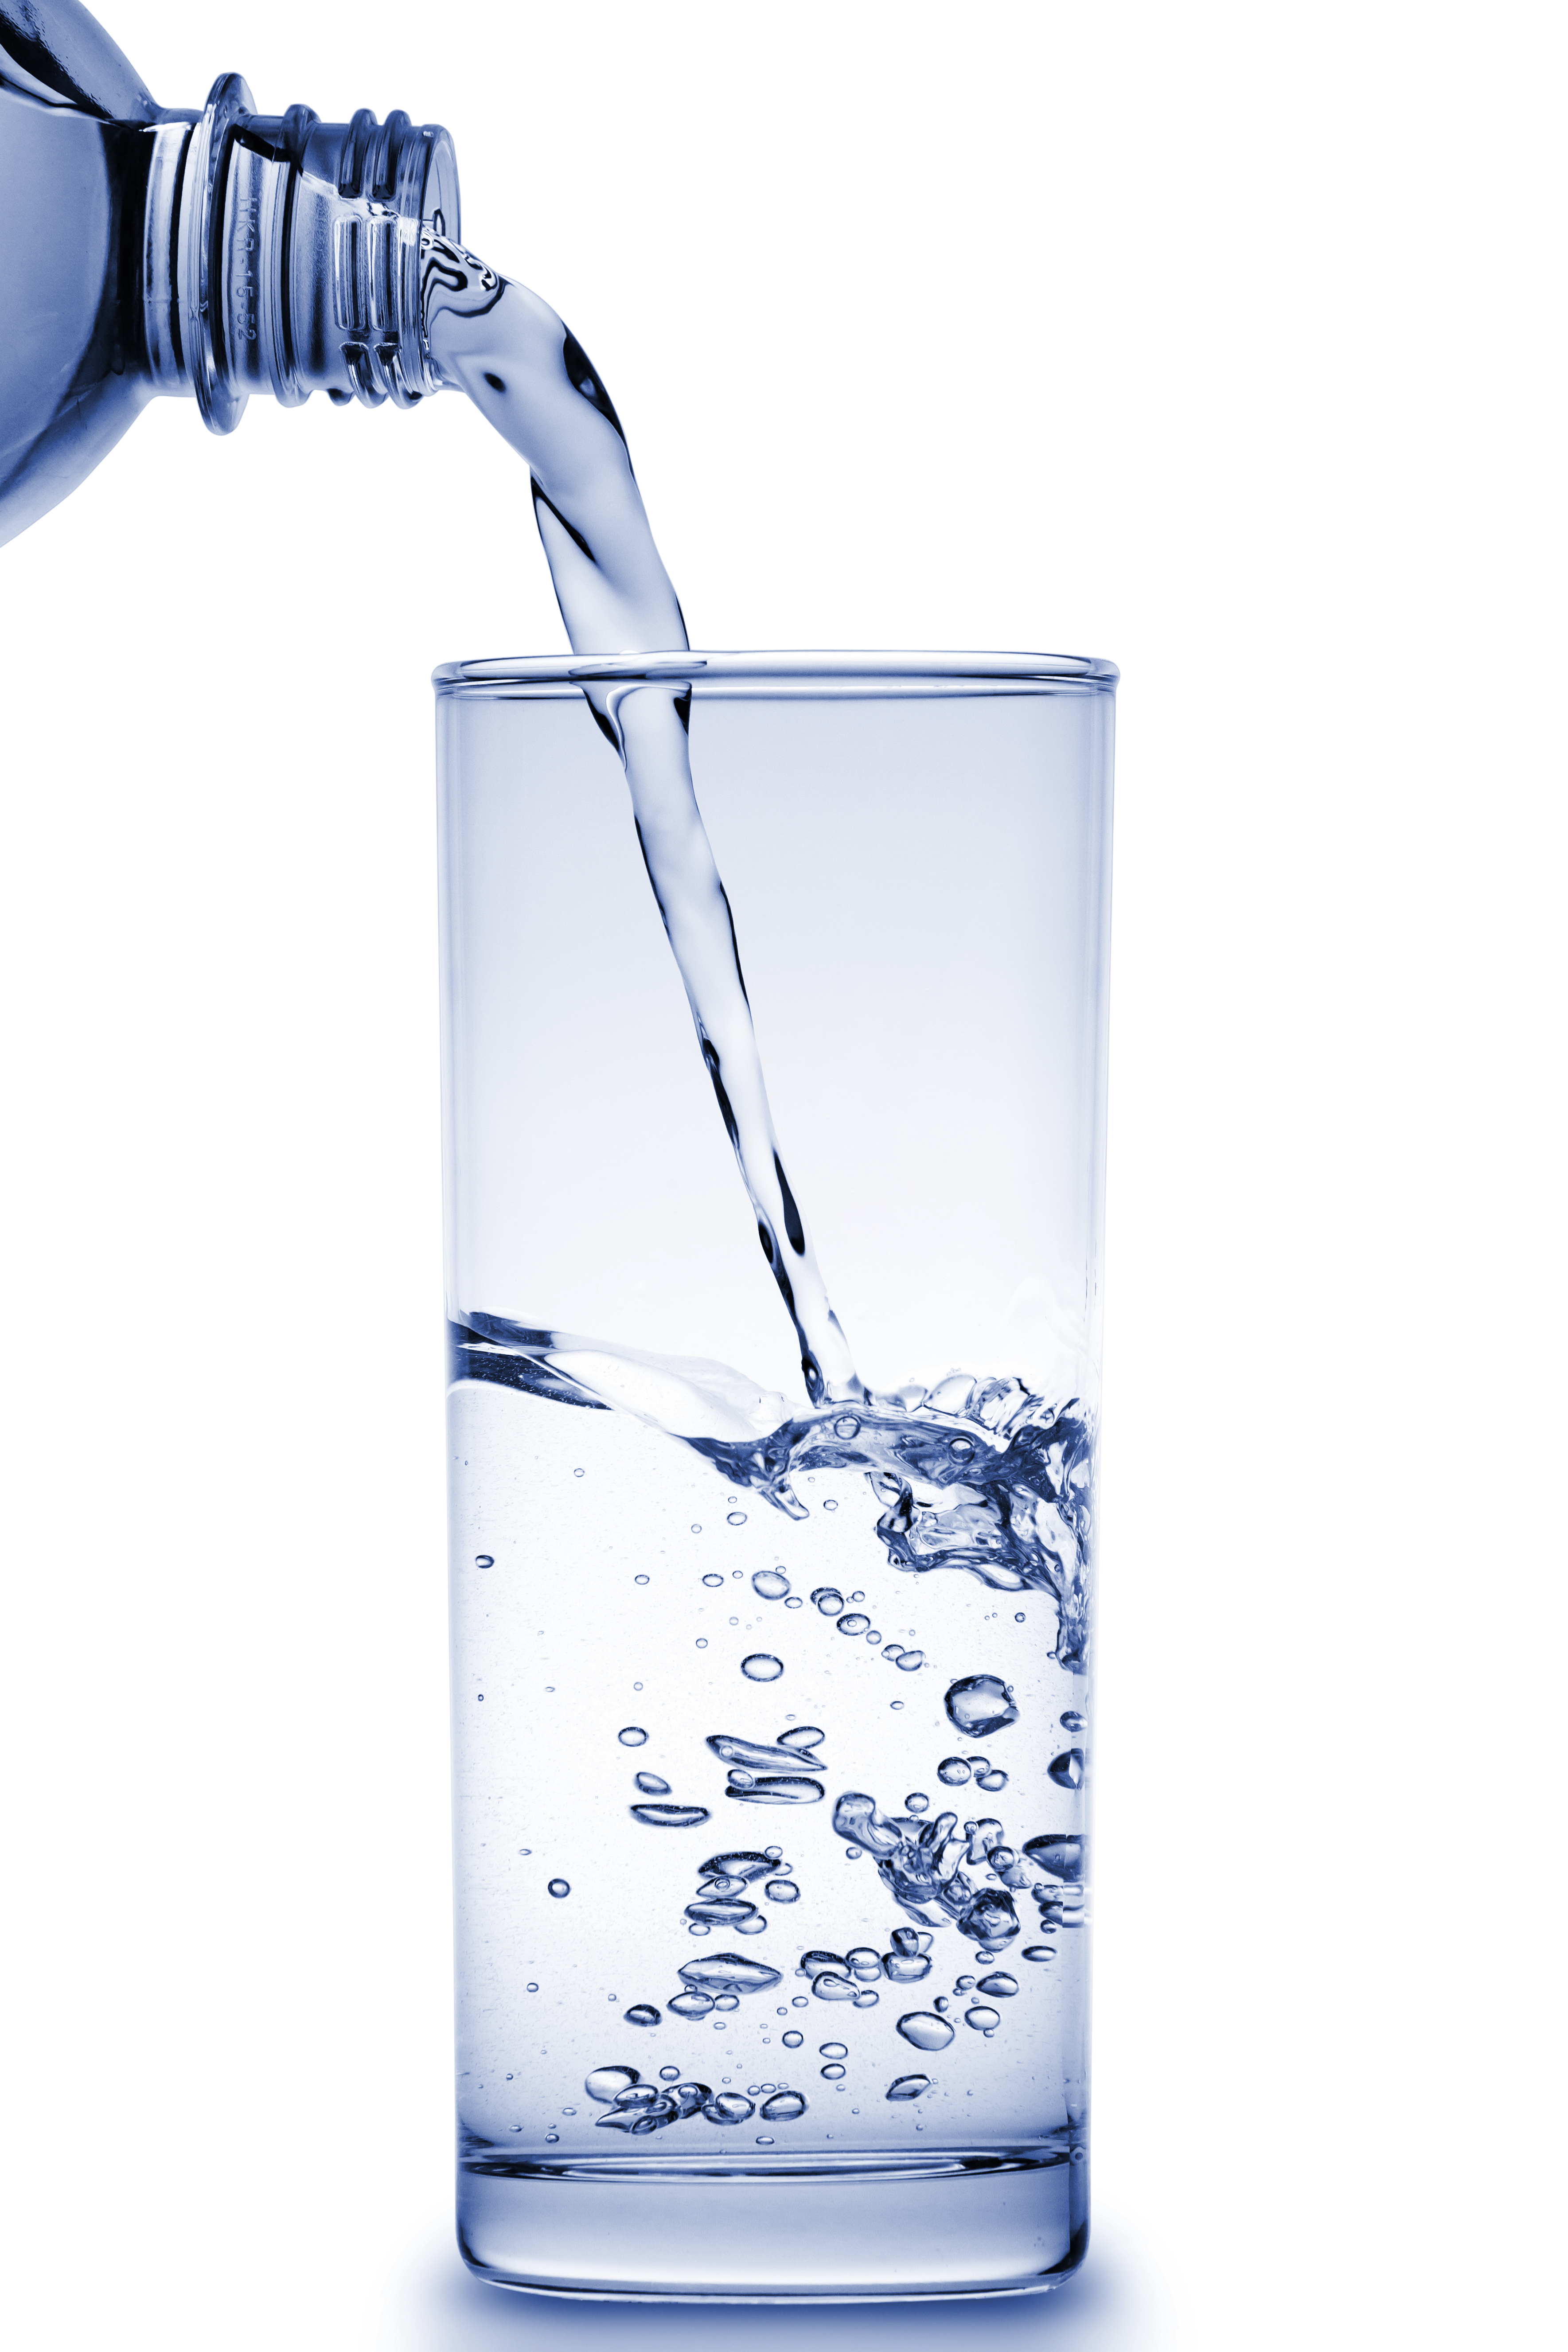 Trinkwasserhygiene ist für die Gesundheit essentiell. Die Legionellenprüfung und Trinkwasseranalyse schützt Sie vor Gefahren.